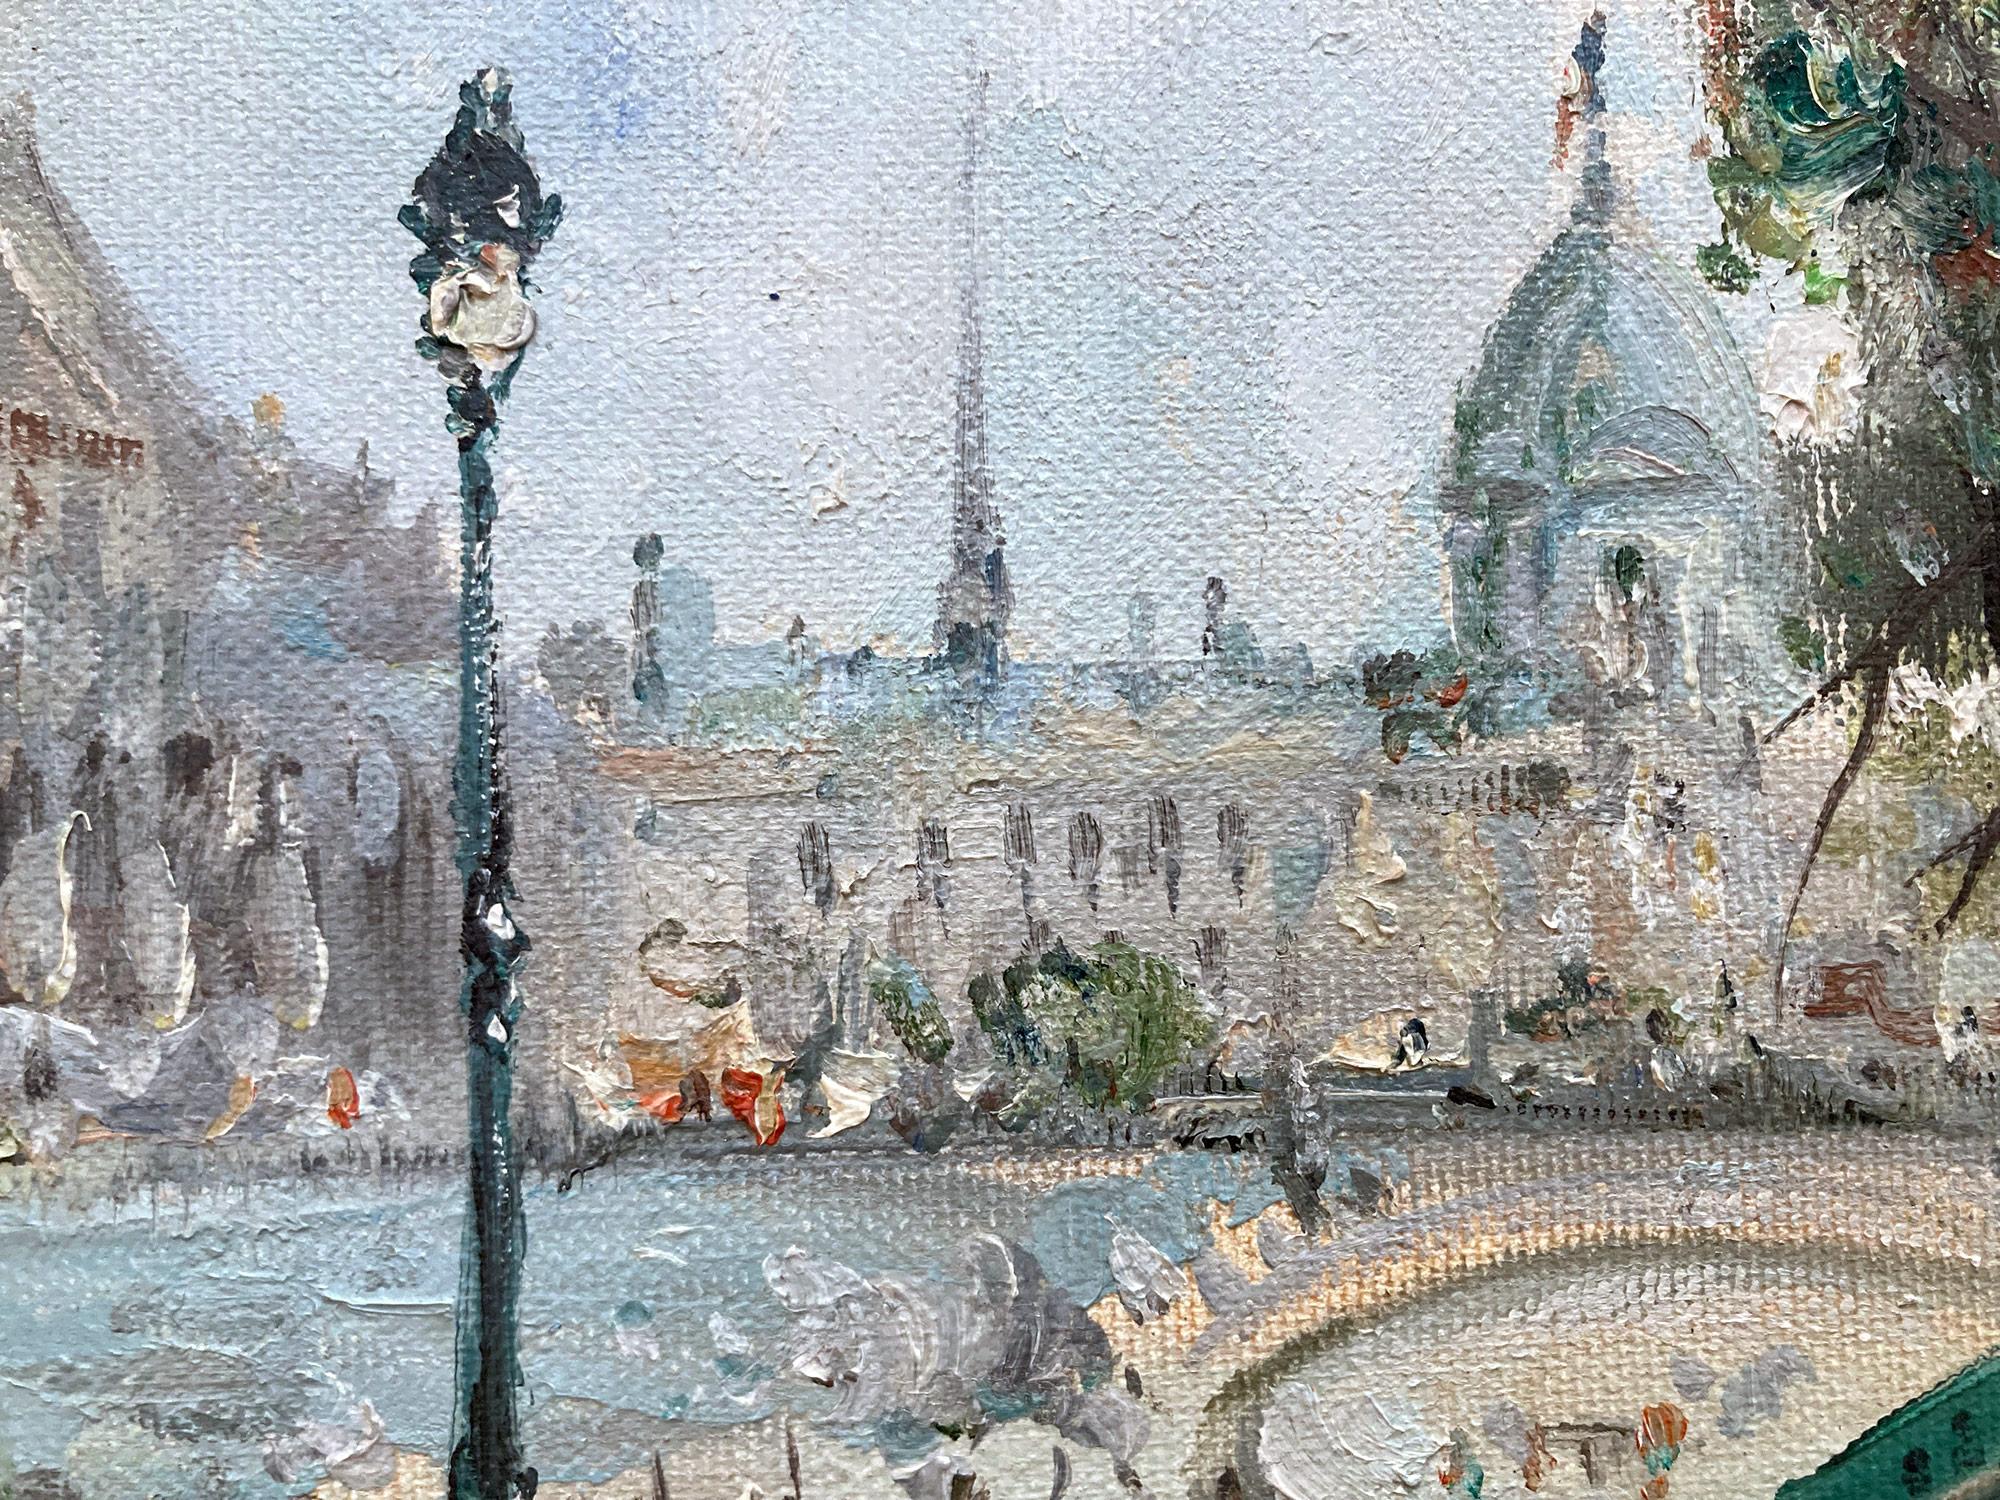 Une représentation impressionniste exceptionnelle d'un après-midi le long de la Seine à Paris par Mario Passoni, un jour de printemps, avec les activités animées des promeneurs et des personnages se penchant sur le bord pour apercevoir les bateaux